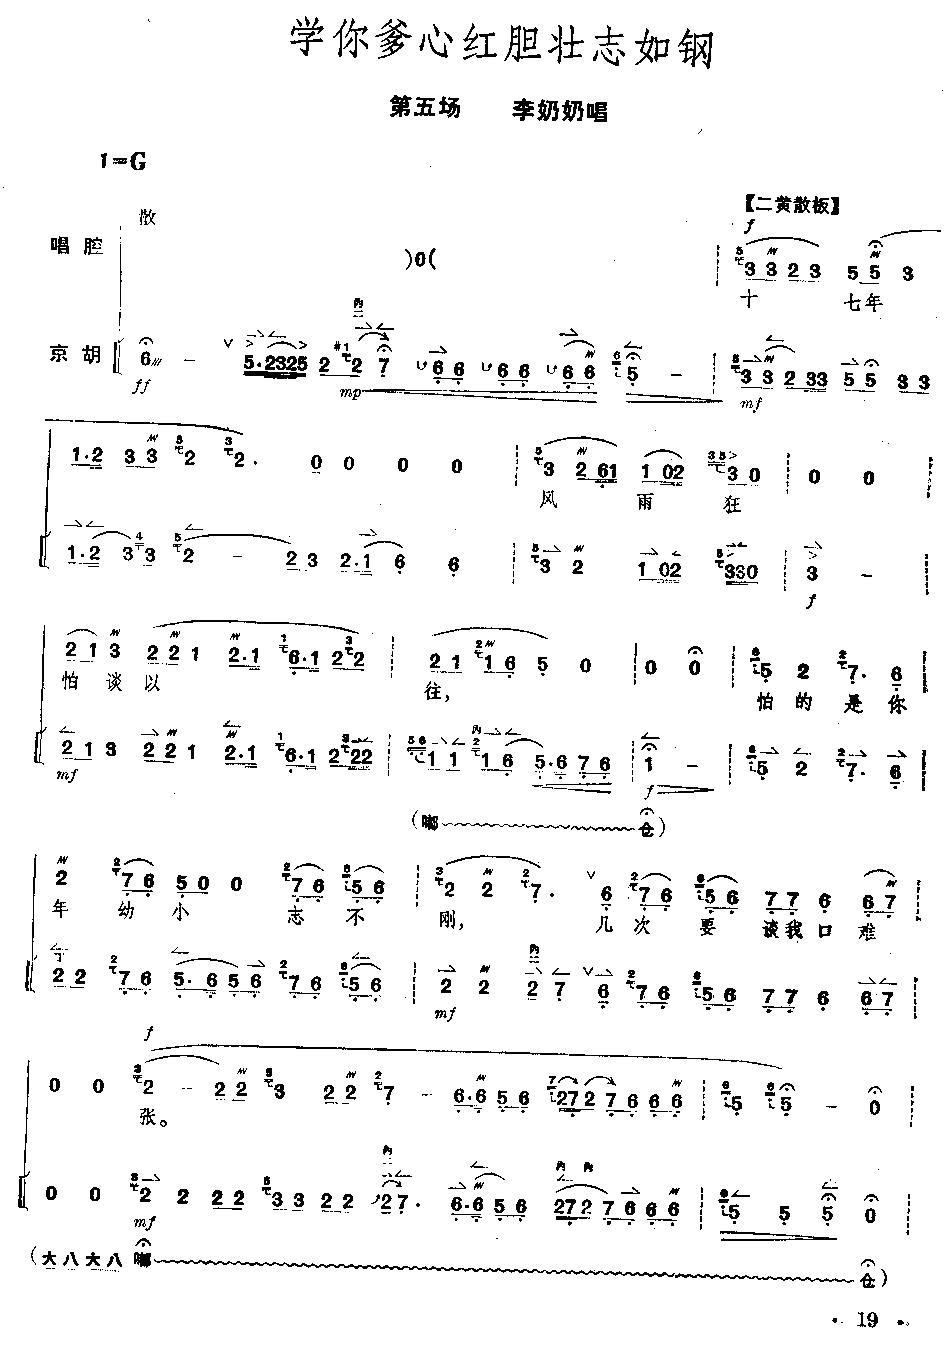 京剧《红灯记》全剧--（唱谱+琴谱）第16--20页总谱（图4）